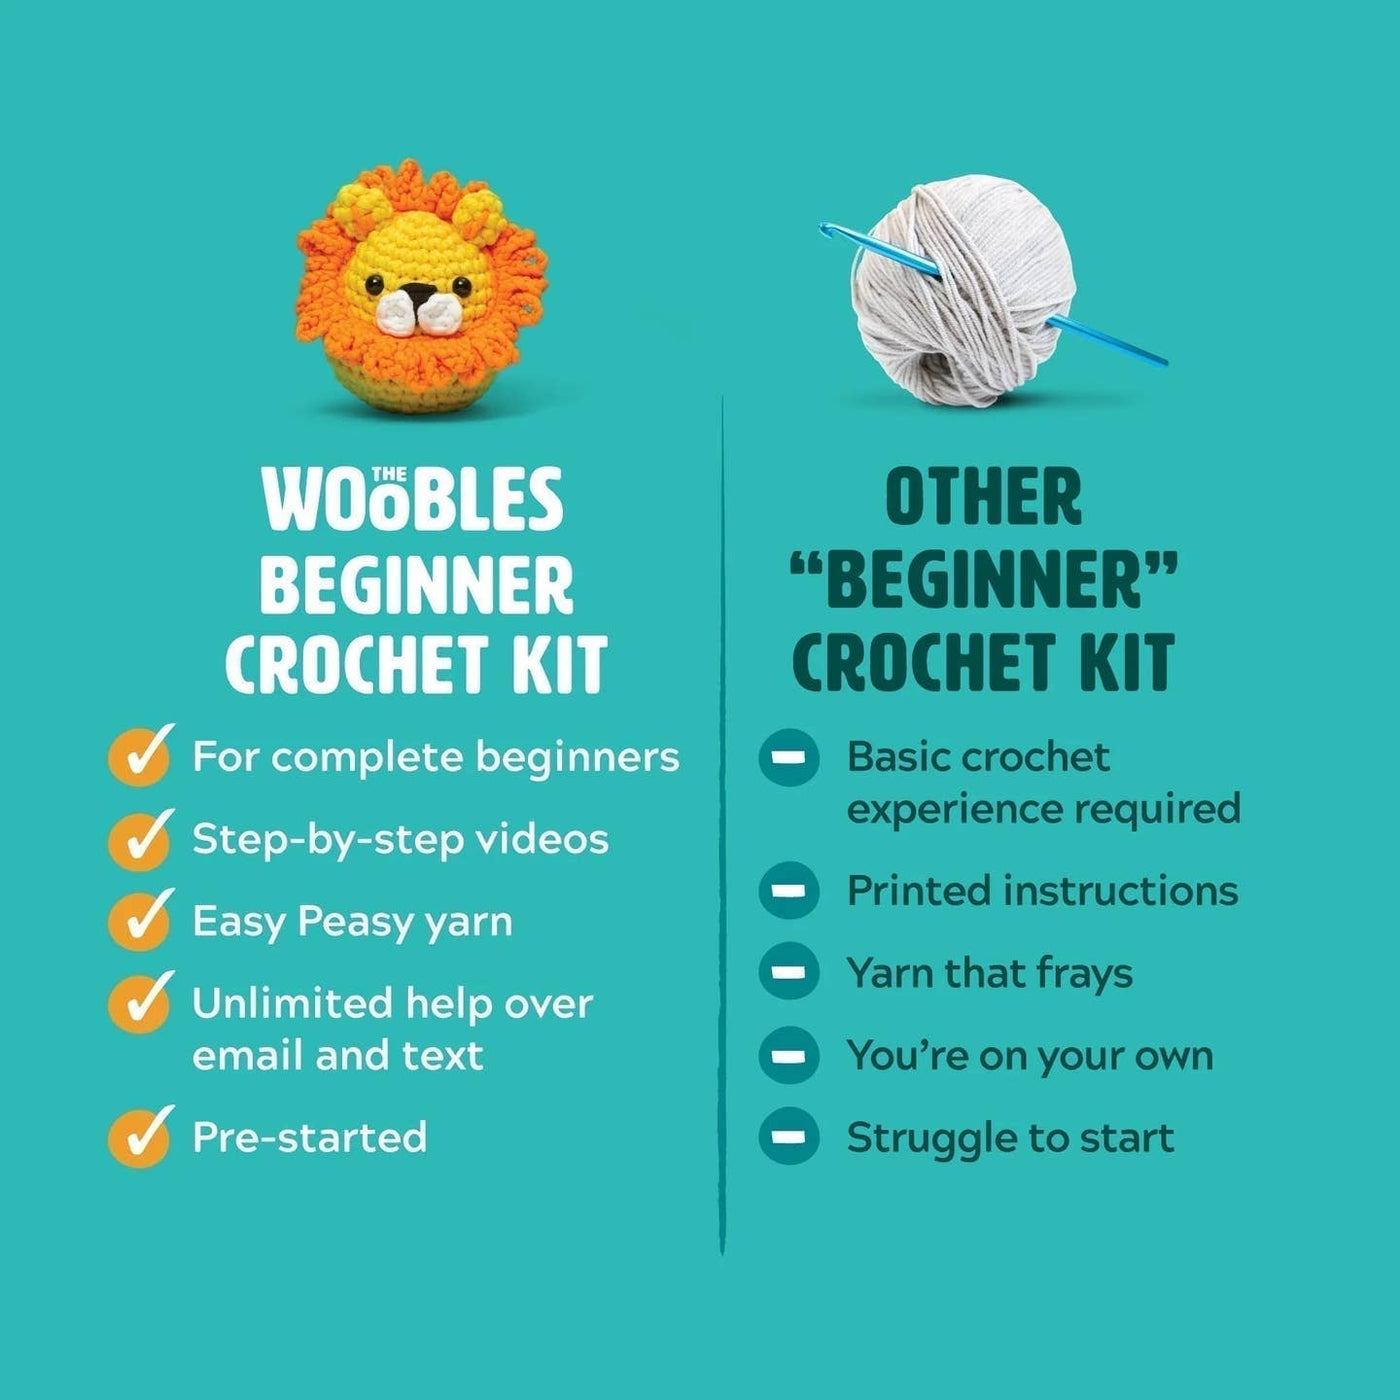 Woobles Fred the Dinosaur Beginner Crochet Kit